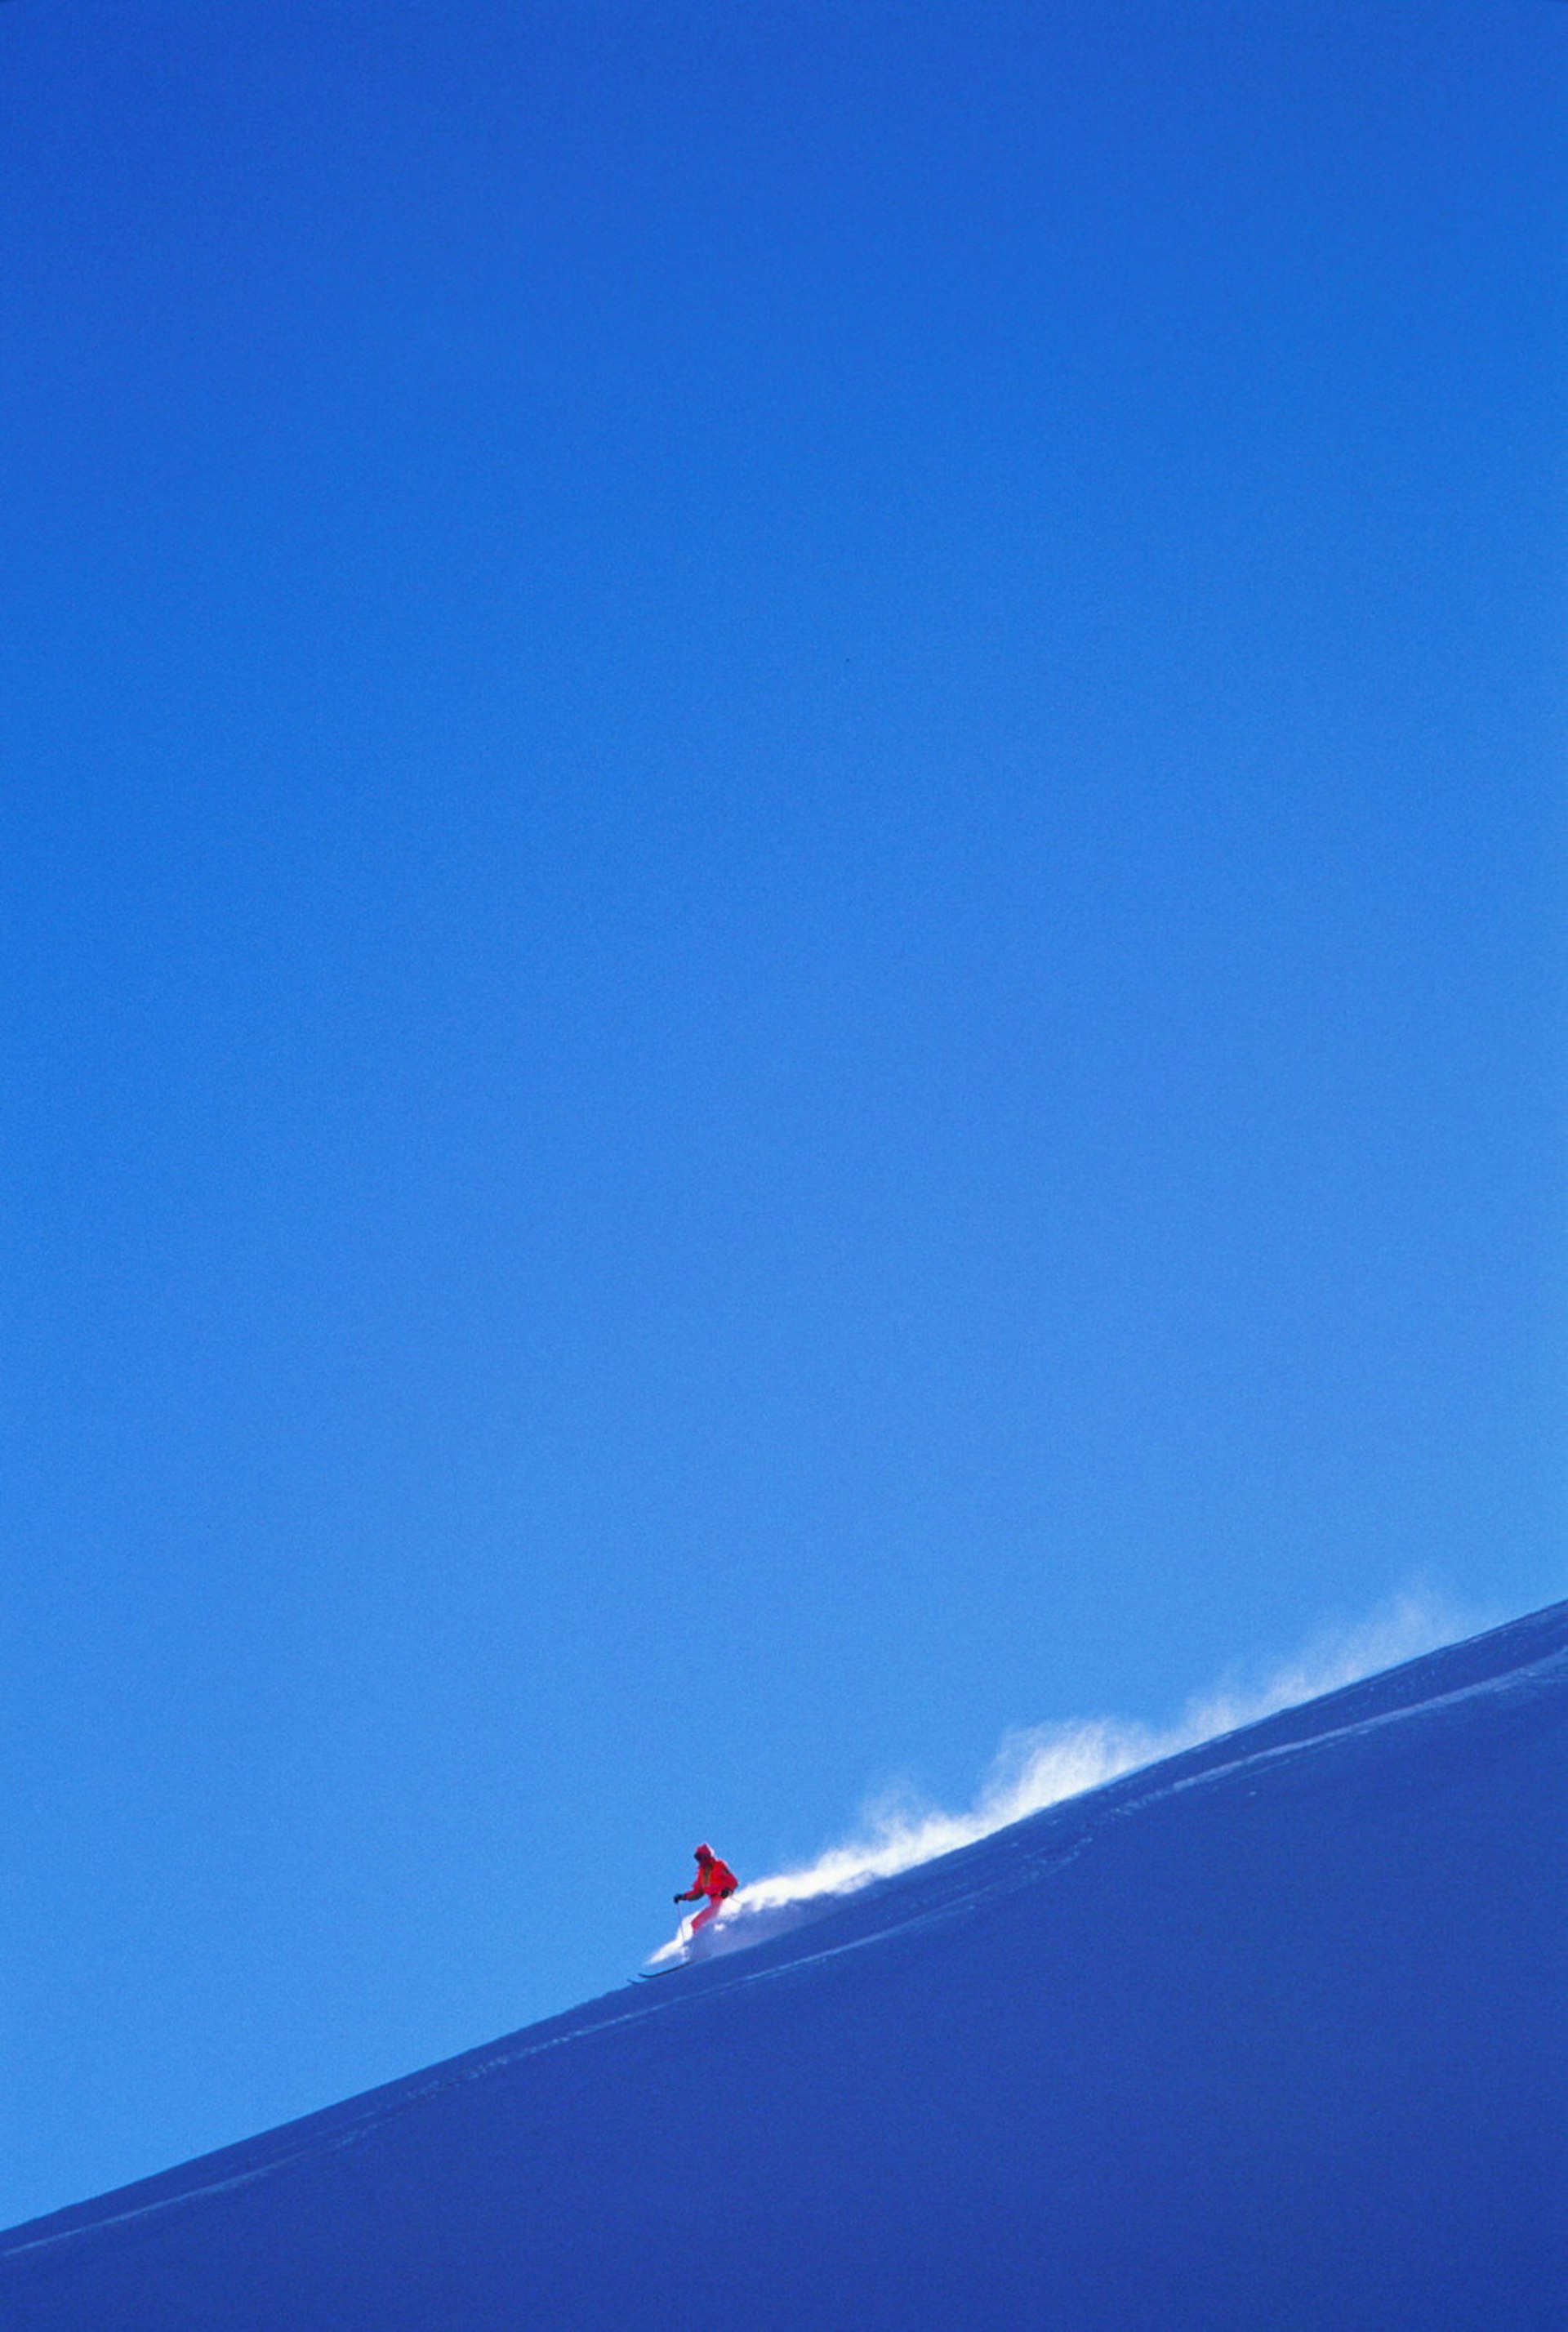 Skier kicks up powder against a blue sky